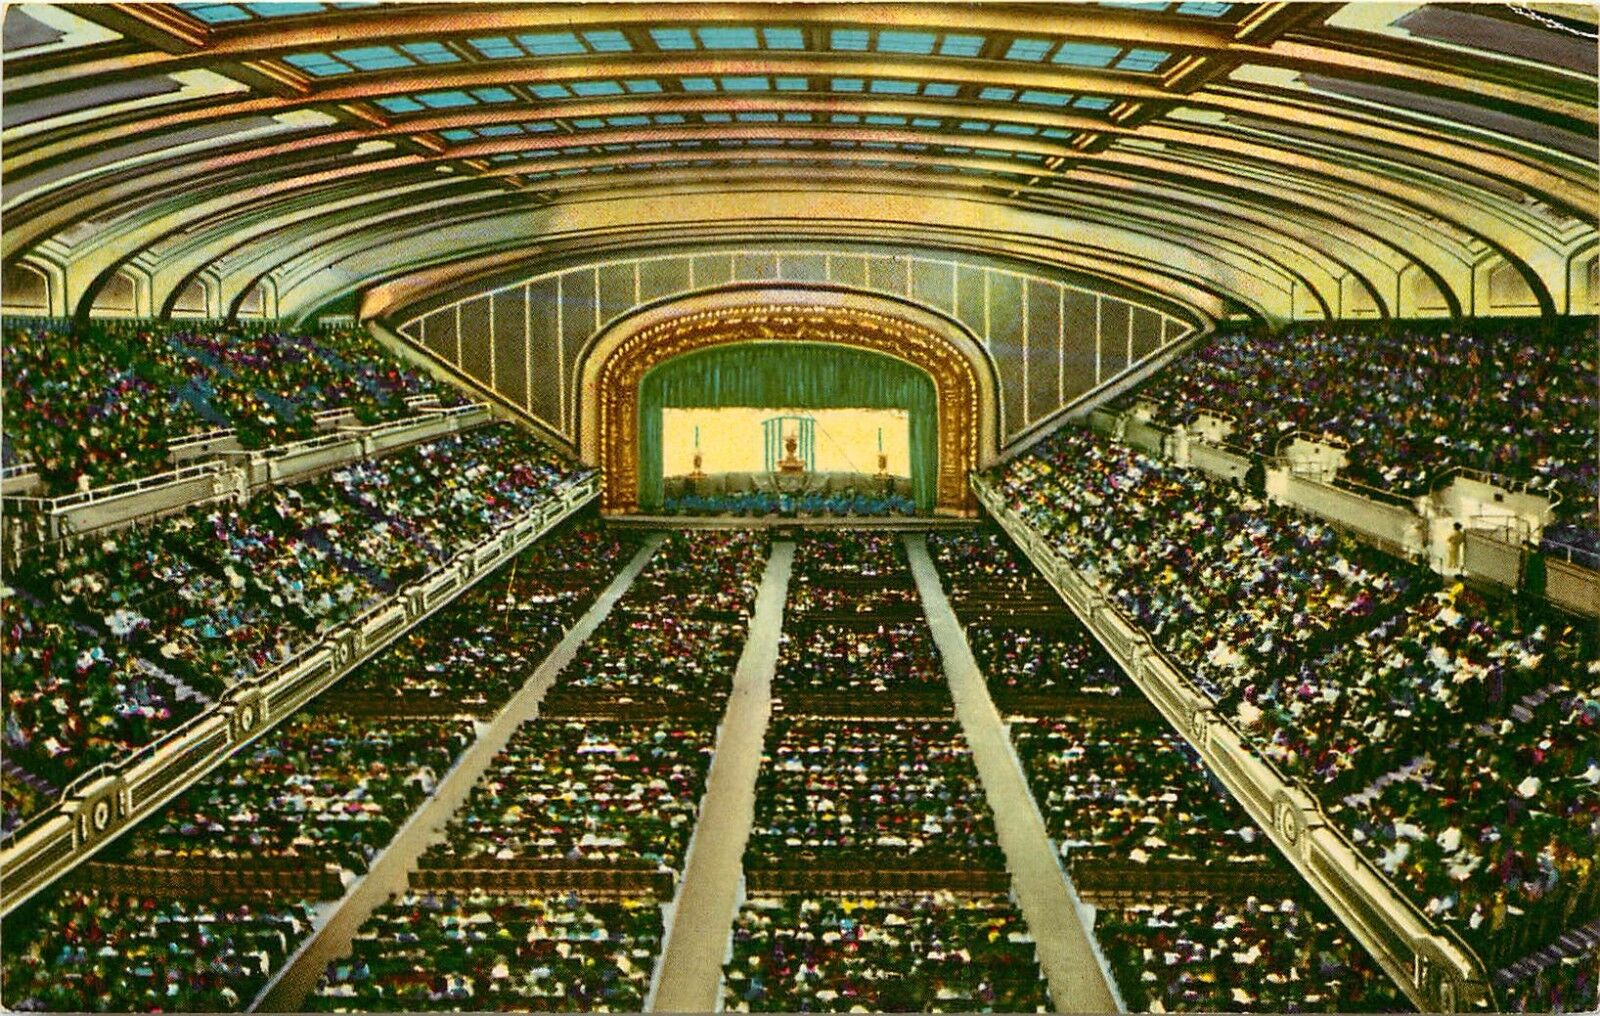 Cleveland Public Auditorium - Ohio - Vintage Post Card